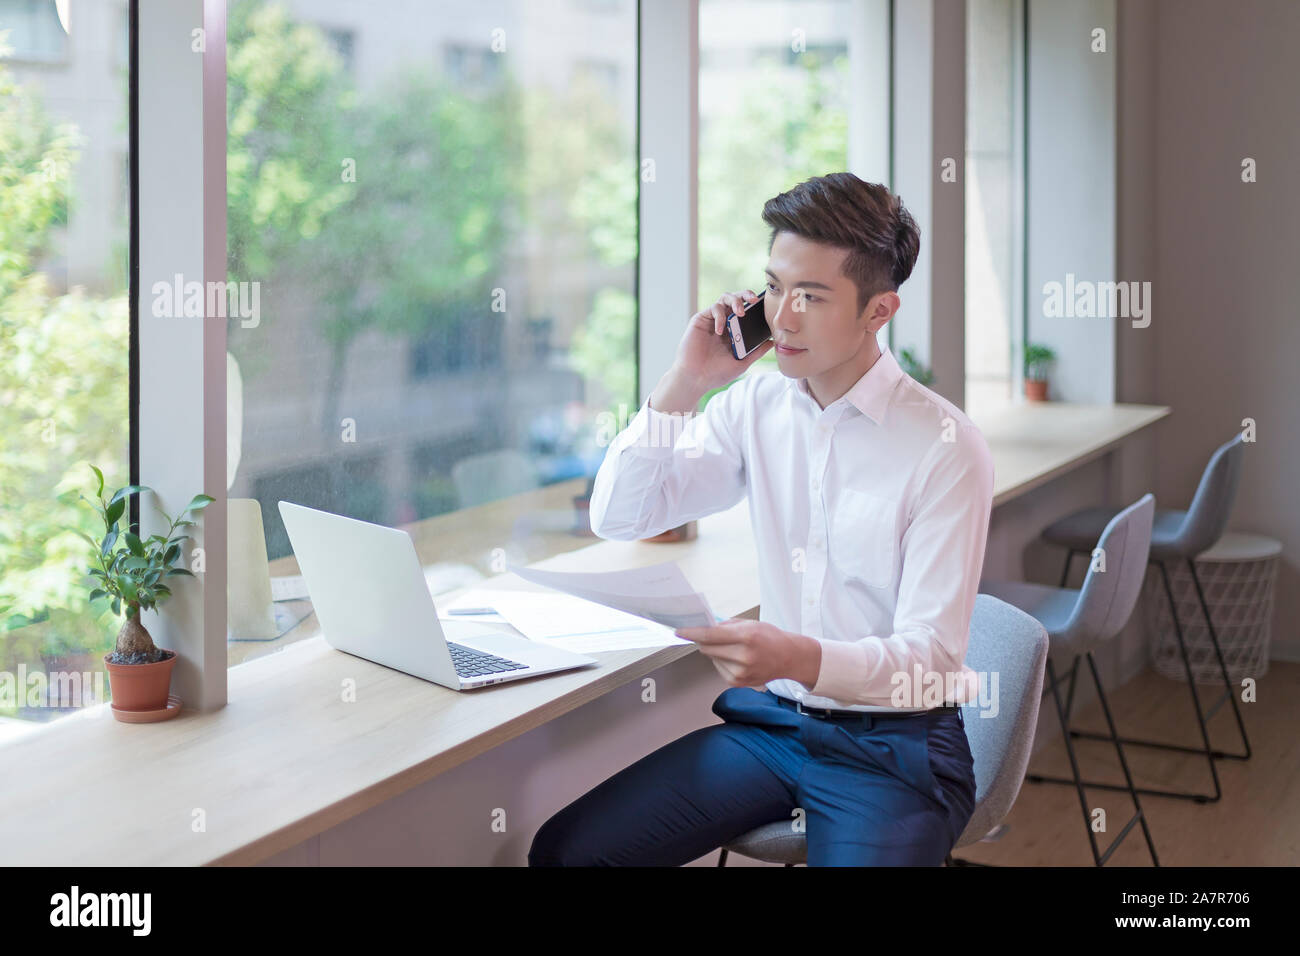 Giovane imprenditore con corti capelli neri e un bianco button down shirt parlando al telefono a una scrivania in un ufficio mentre si tiene un documento Foto Stock